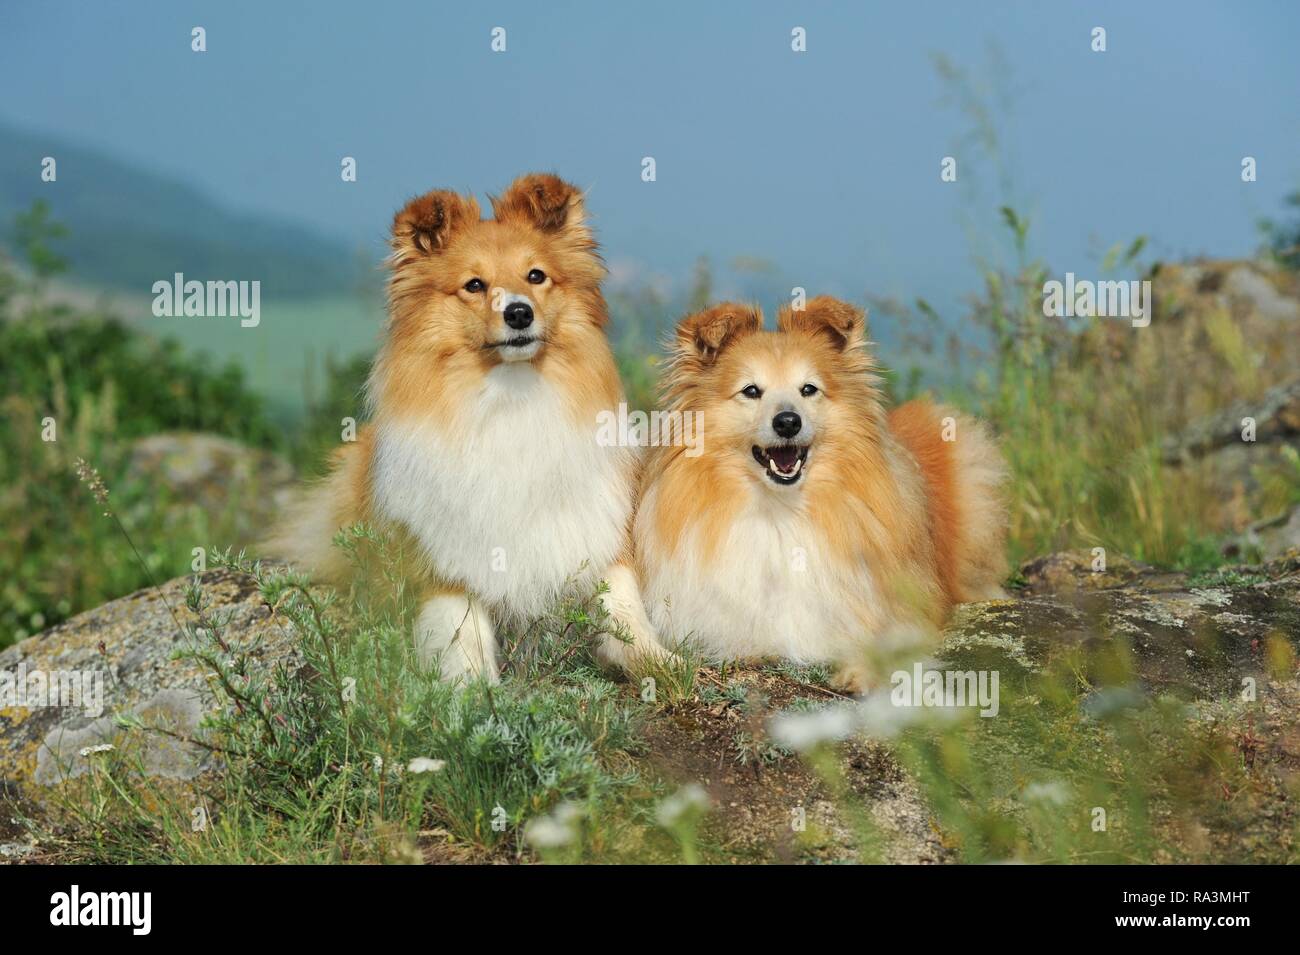 Sheltie, sable, deux chiennes allongé sur un sol rocailleux, animal portrait, Autriche Banque D'Images